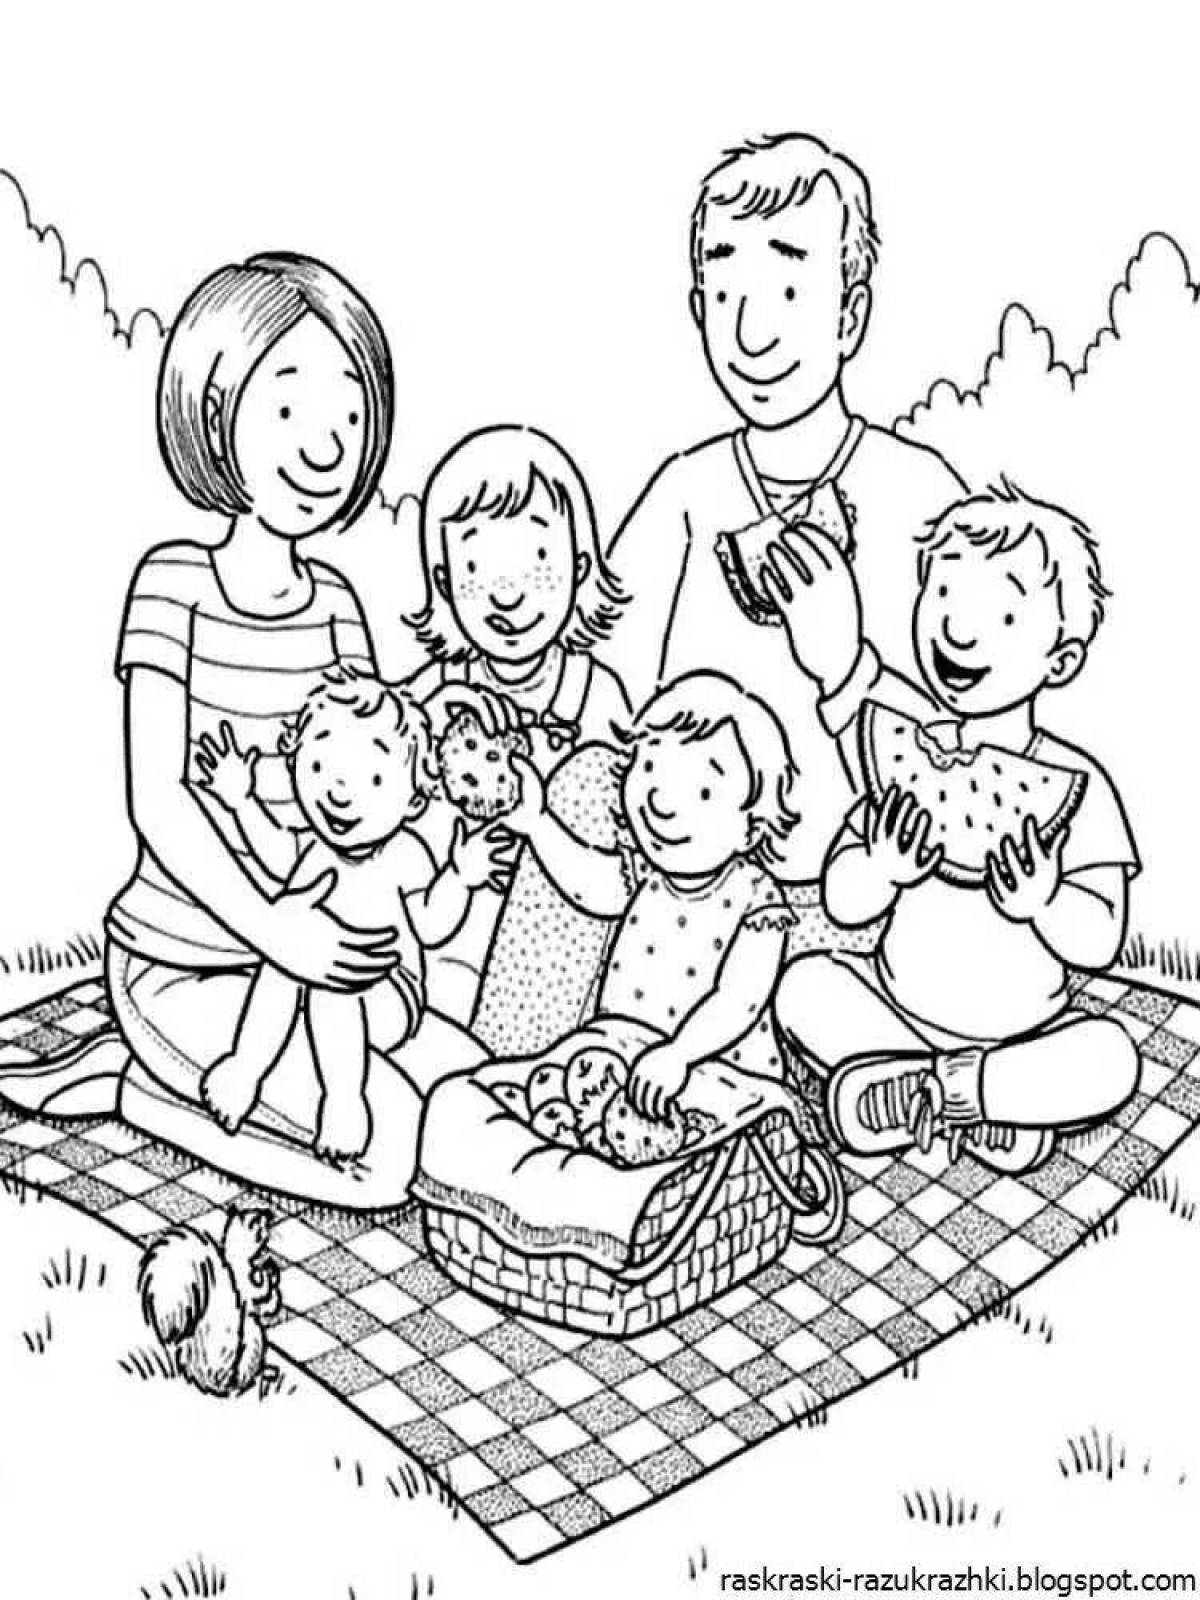 Увлекательная семейная раскраска для детей 3-4 лет